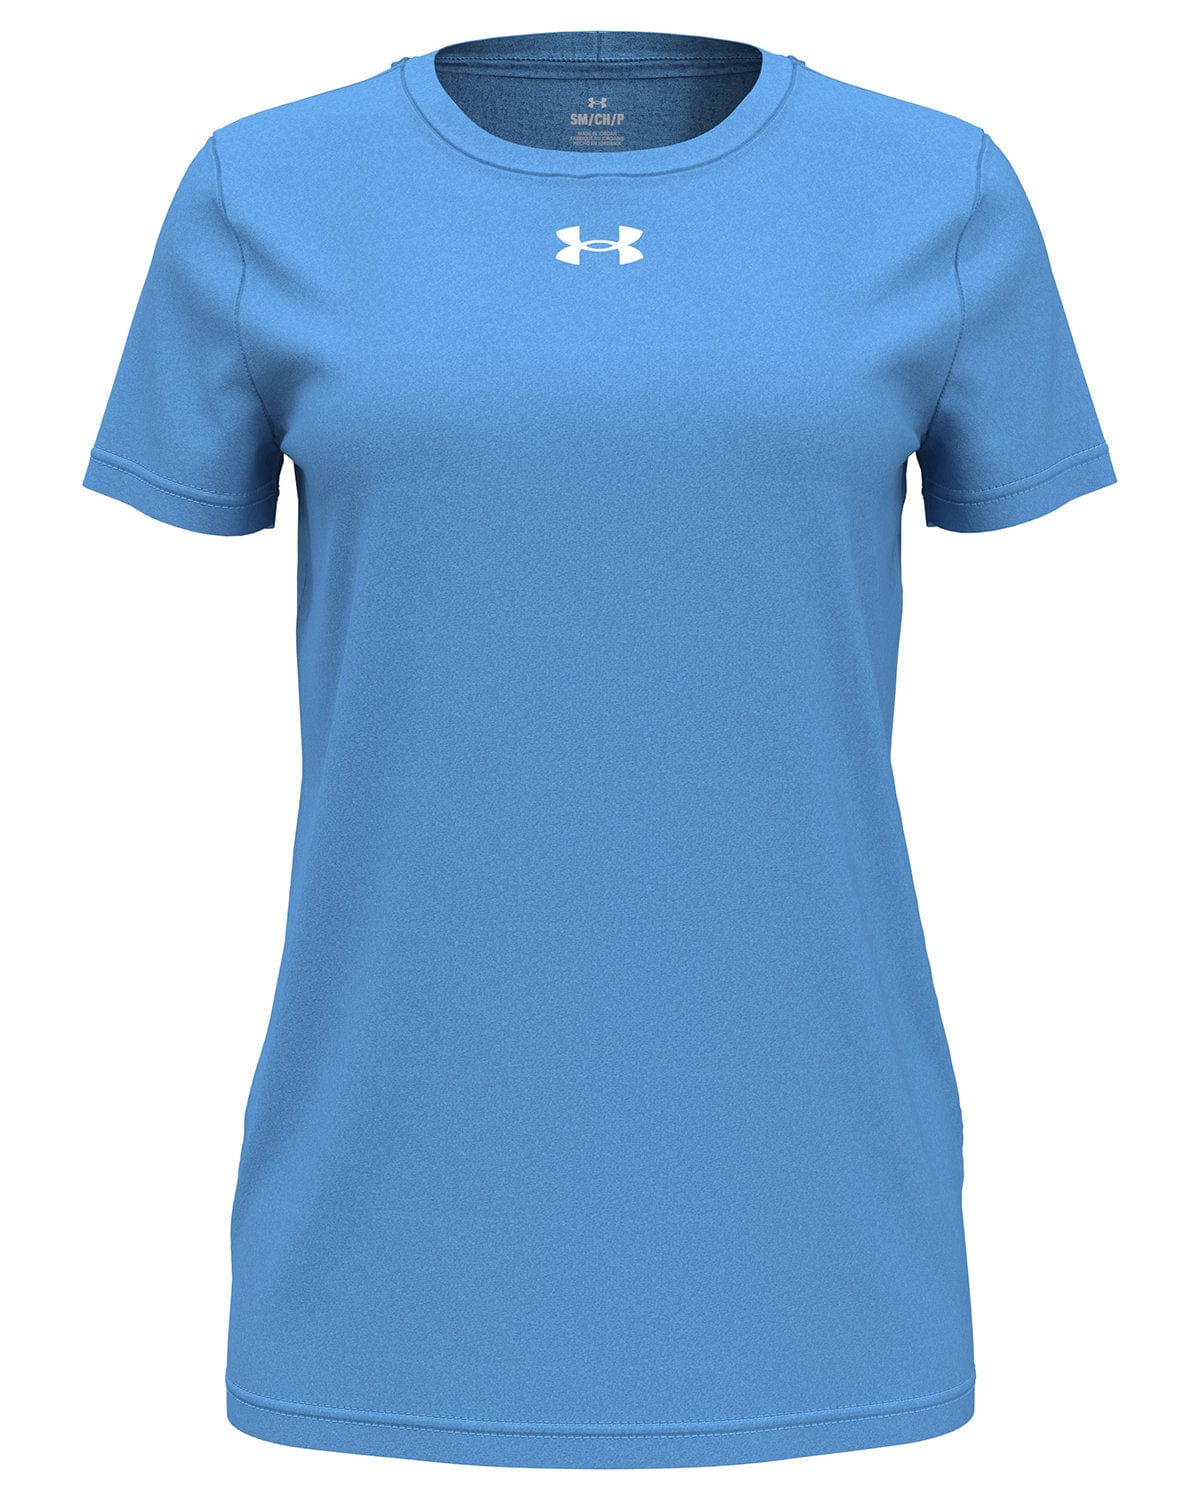 Under Armour - Women's Team Tech Short-Sleeve T-Shirt – Threadfellows